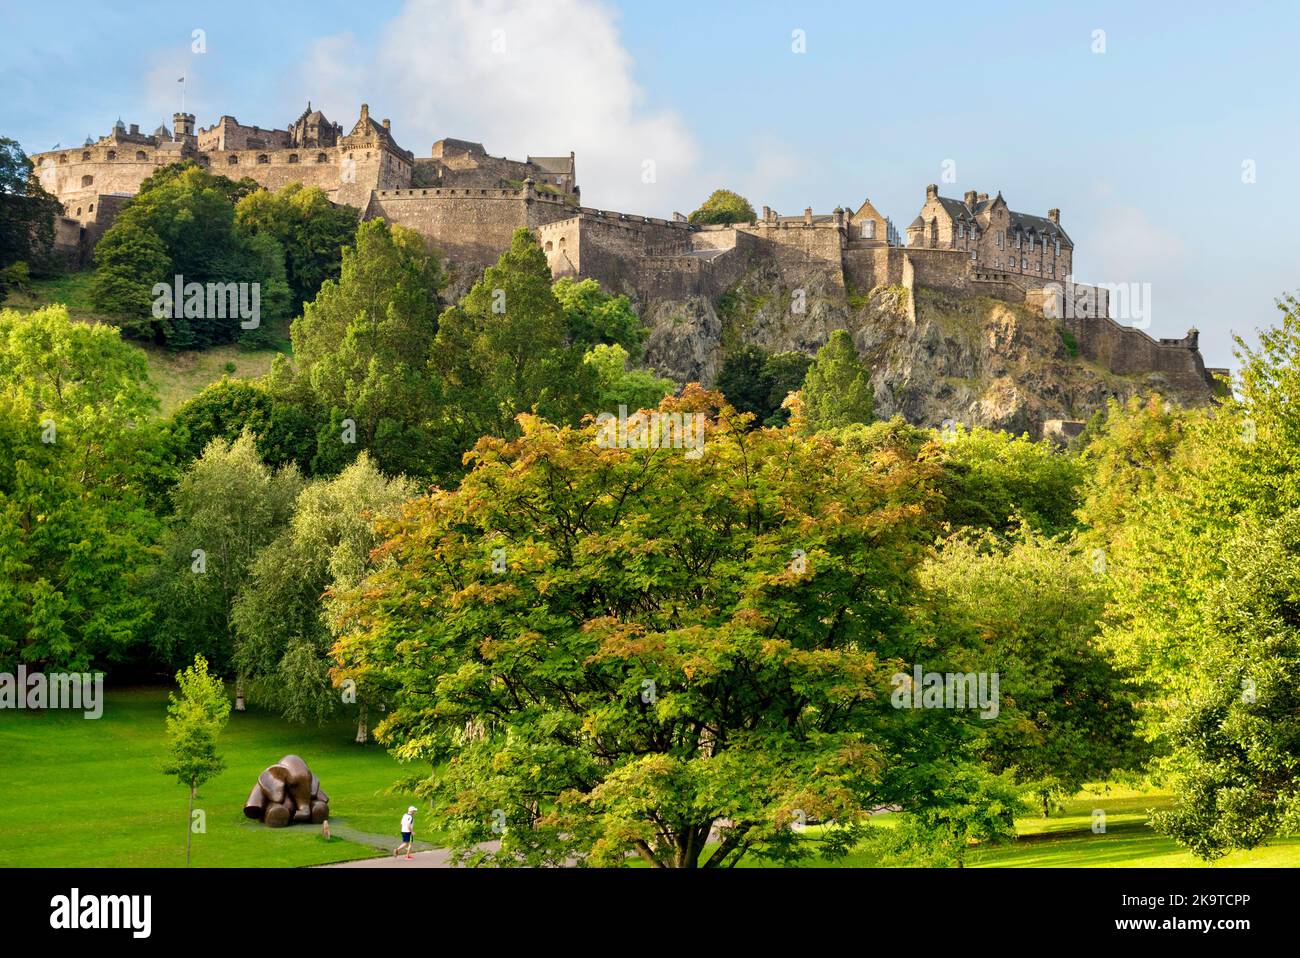 17 septembre 2022 : Édimbourg, Écosse - Château d'Édimbourg, perché sur son rocher au-dessus des arbres sur Princes Street Gardens. Jogger passe. Banque D'Images